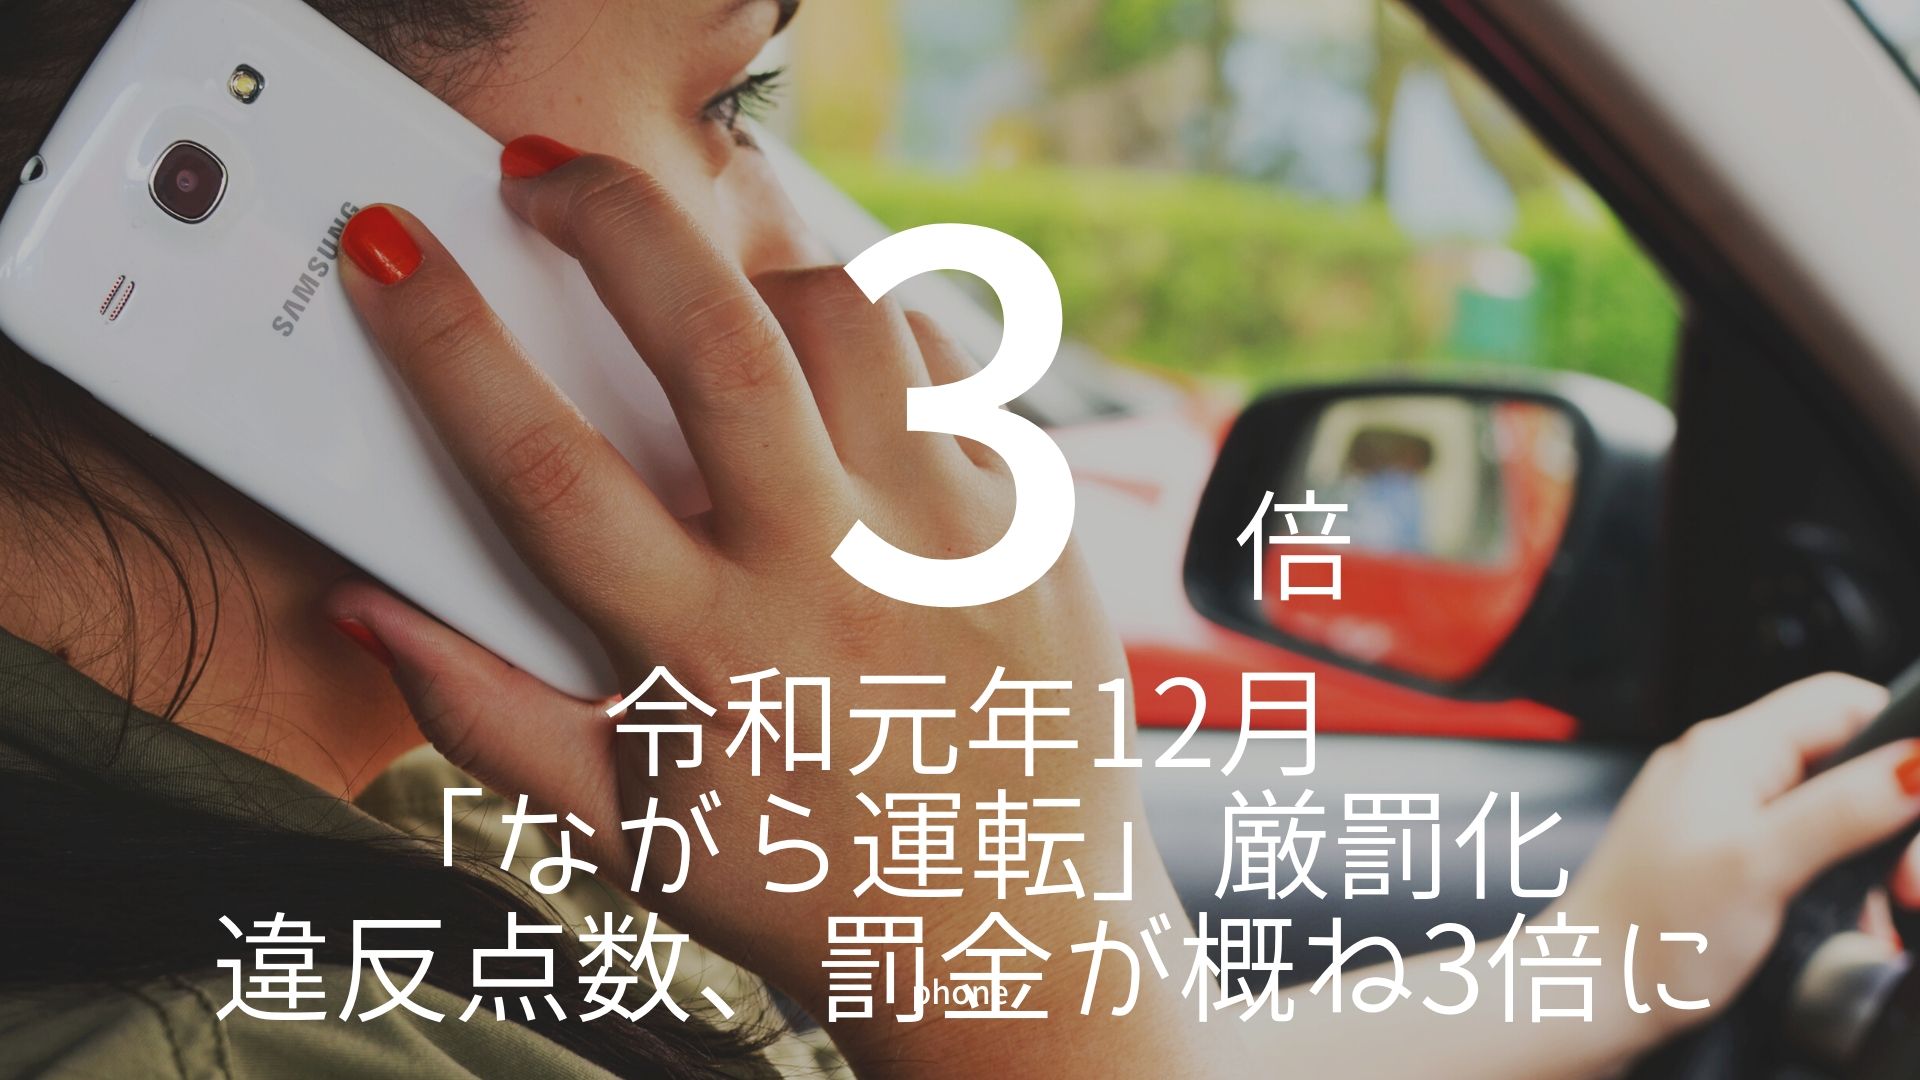 「3倍」 >>> 令和元年12月「ながら運転」厳罰化。違反点数、罰金が概ね3倍に。